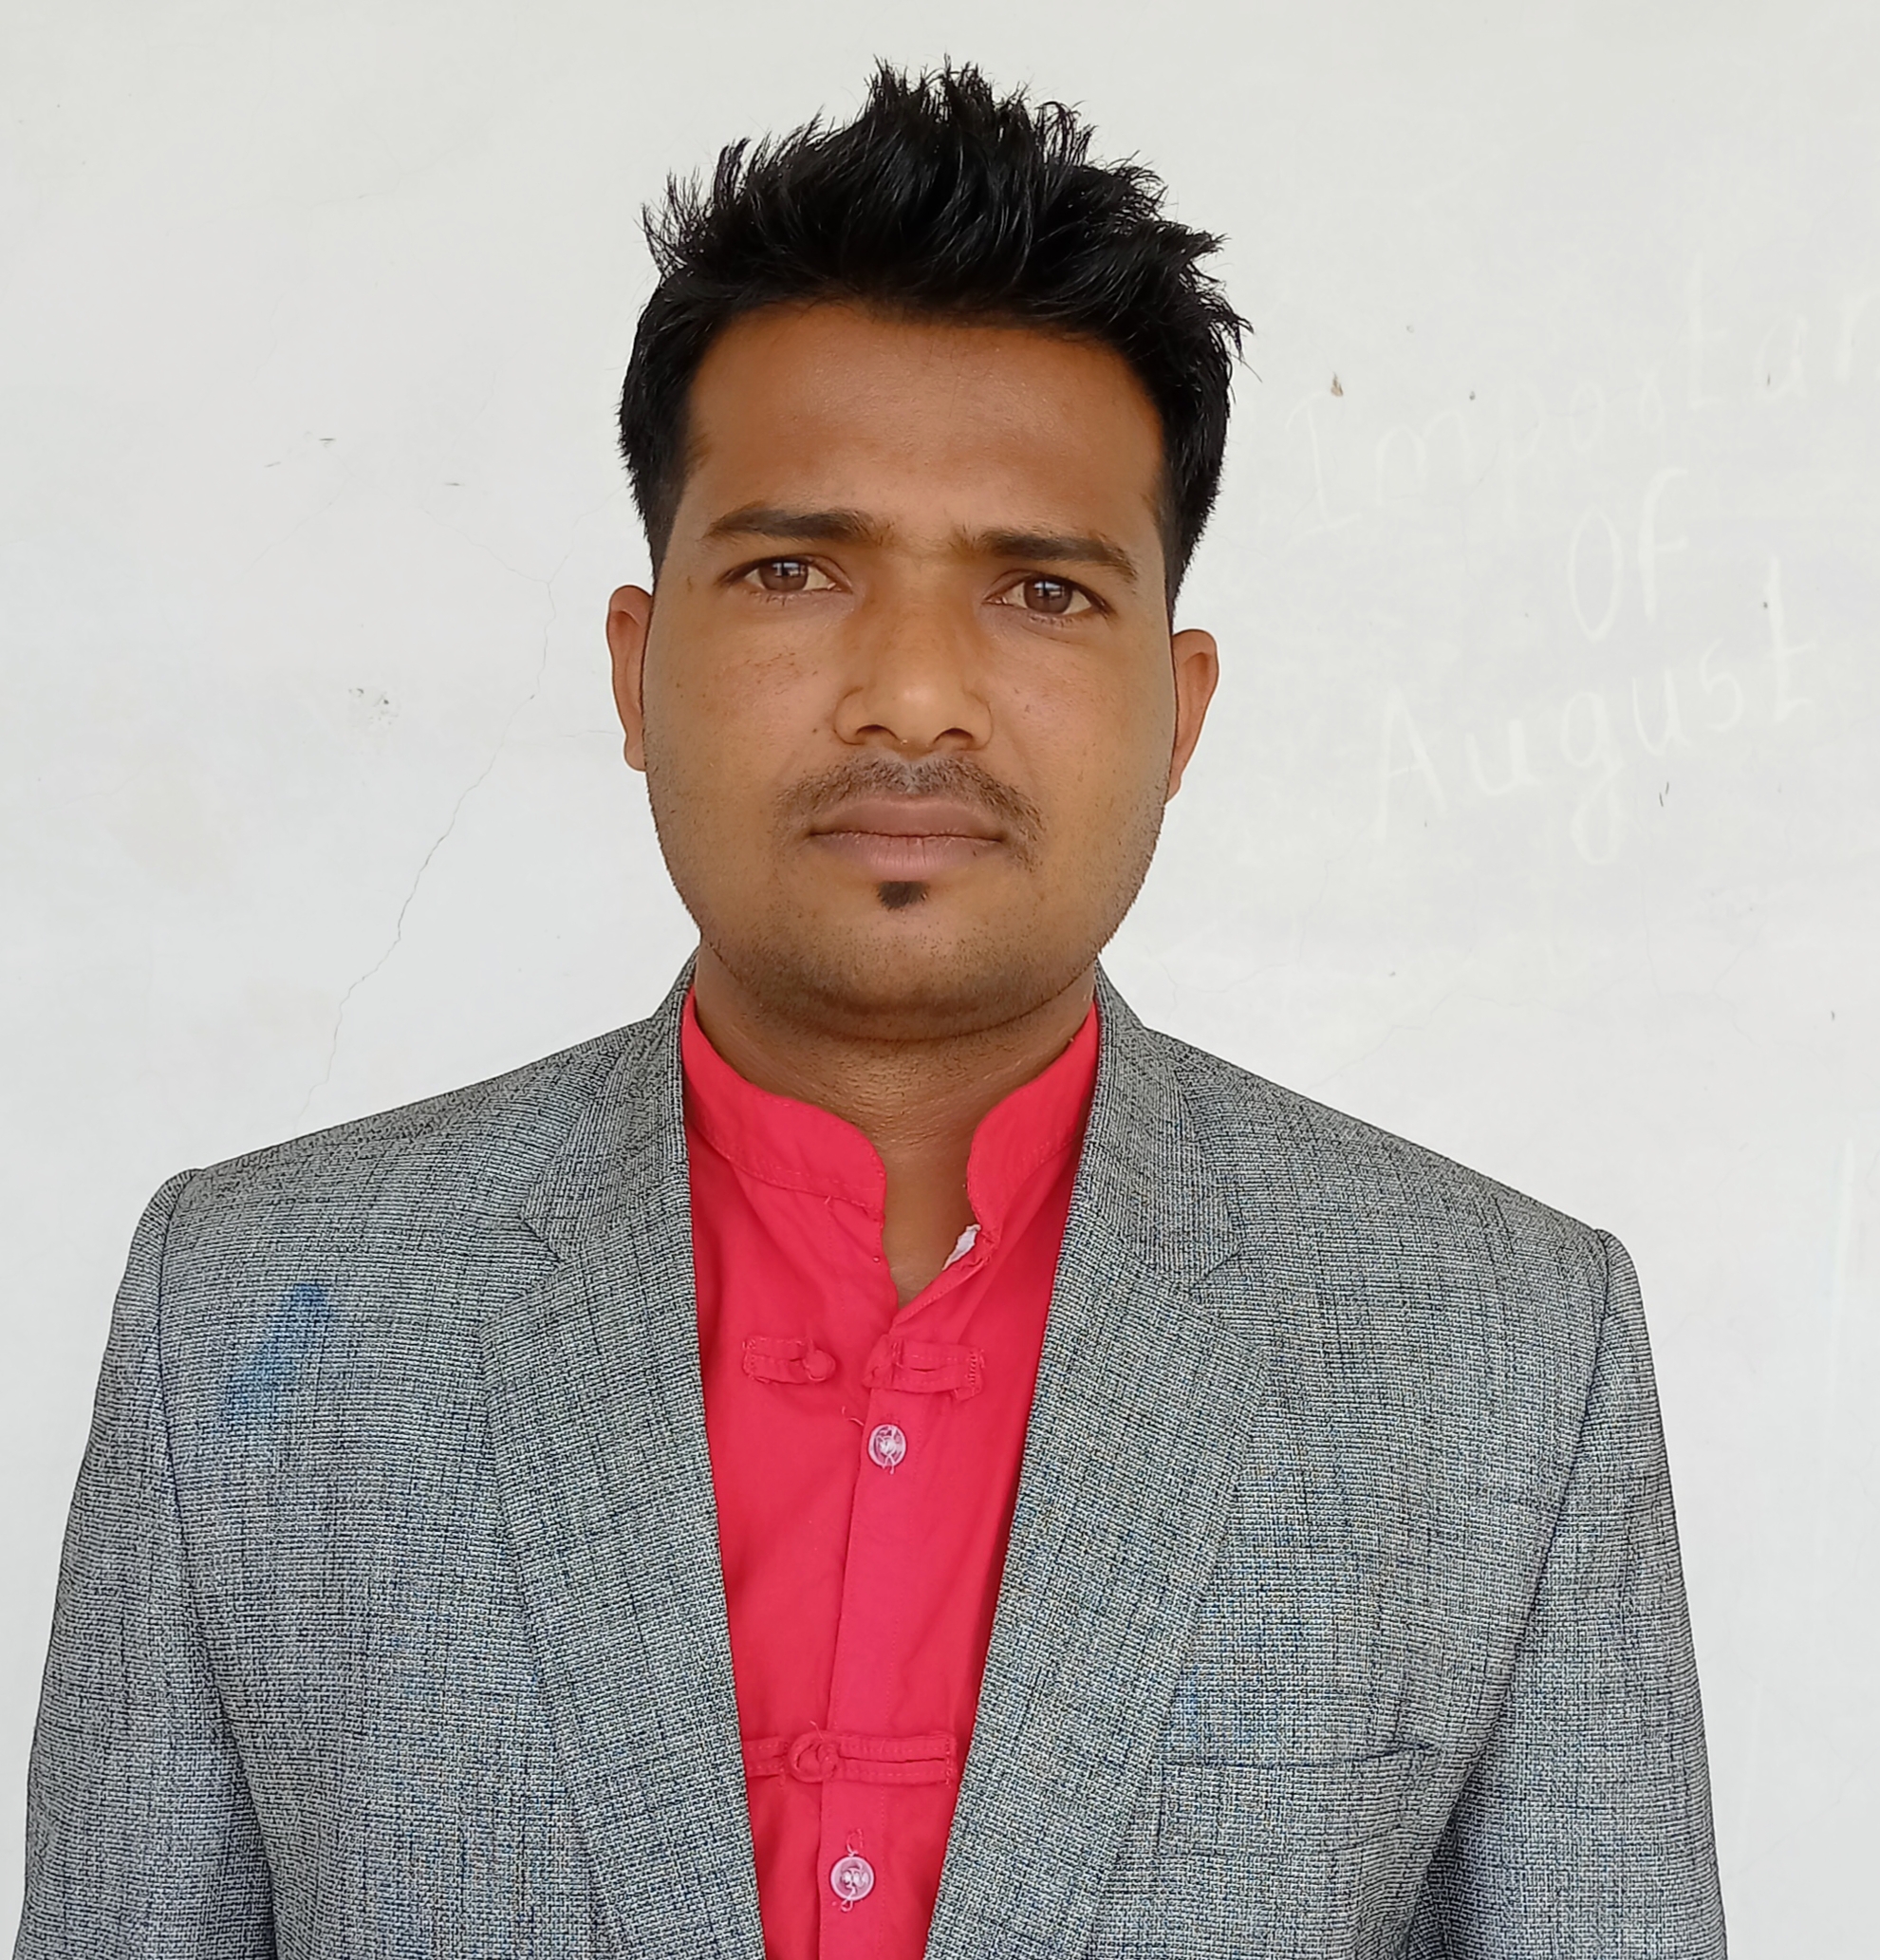 Mr. Mohan Ashok Thakrey